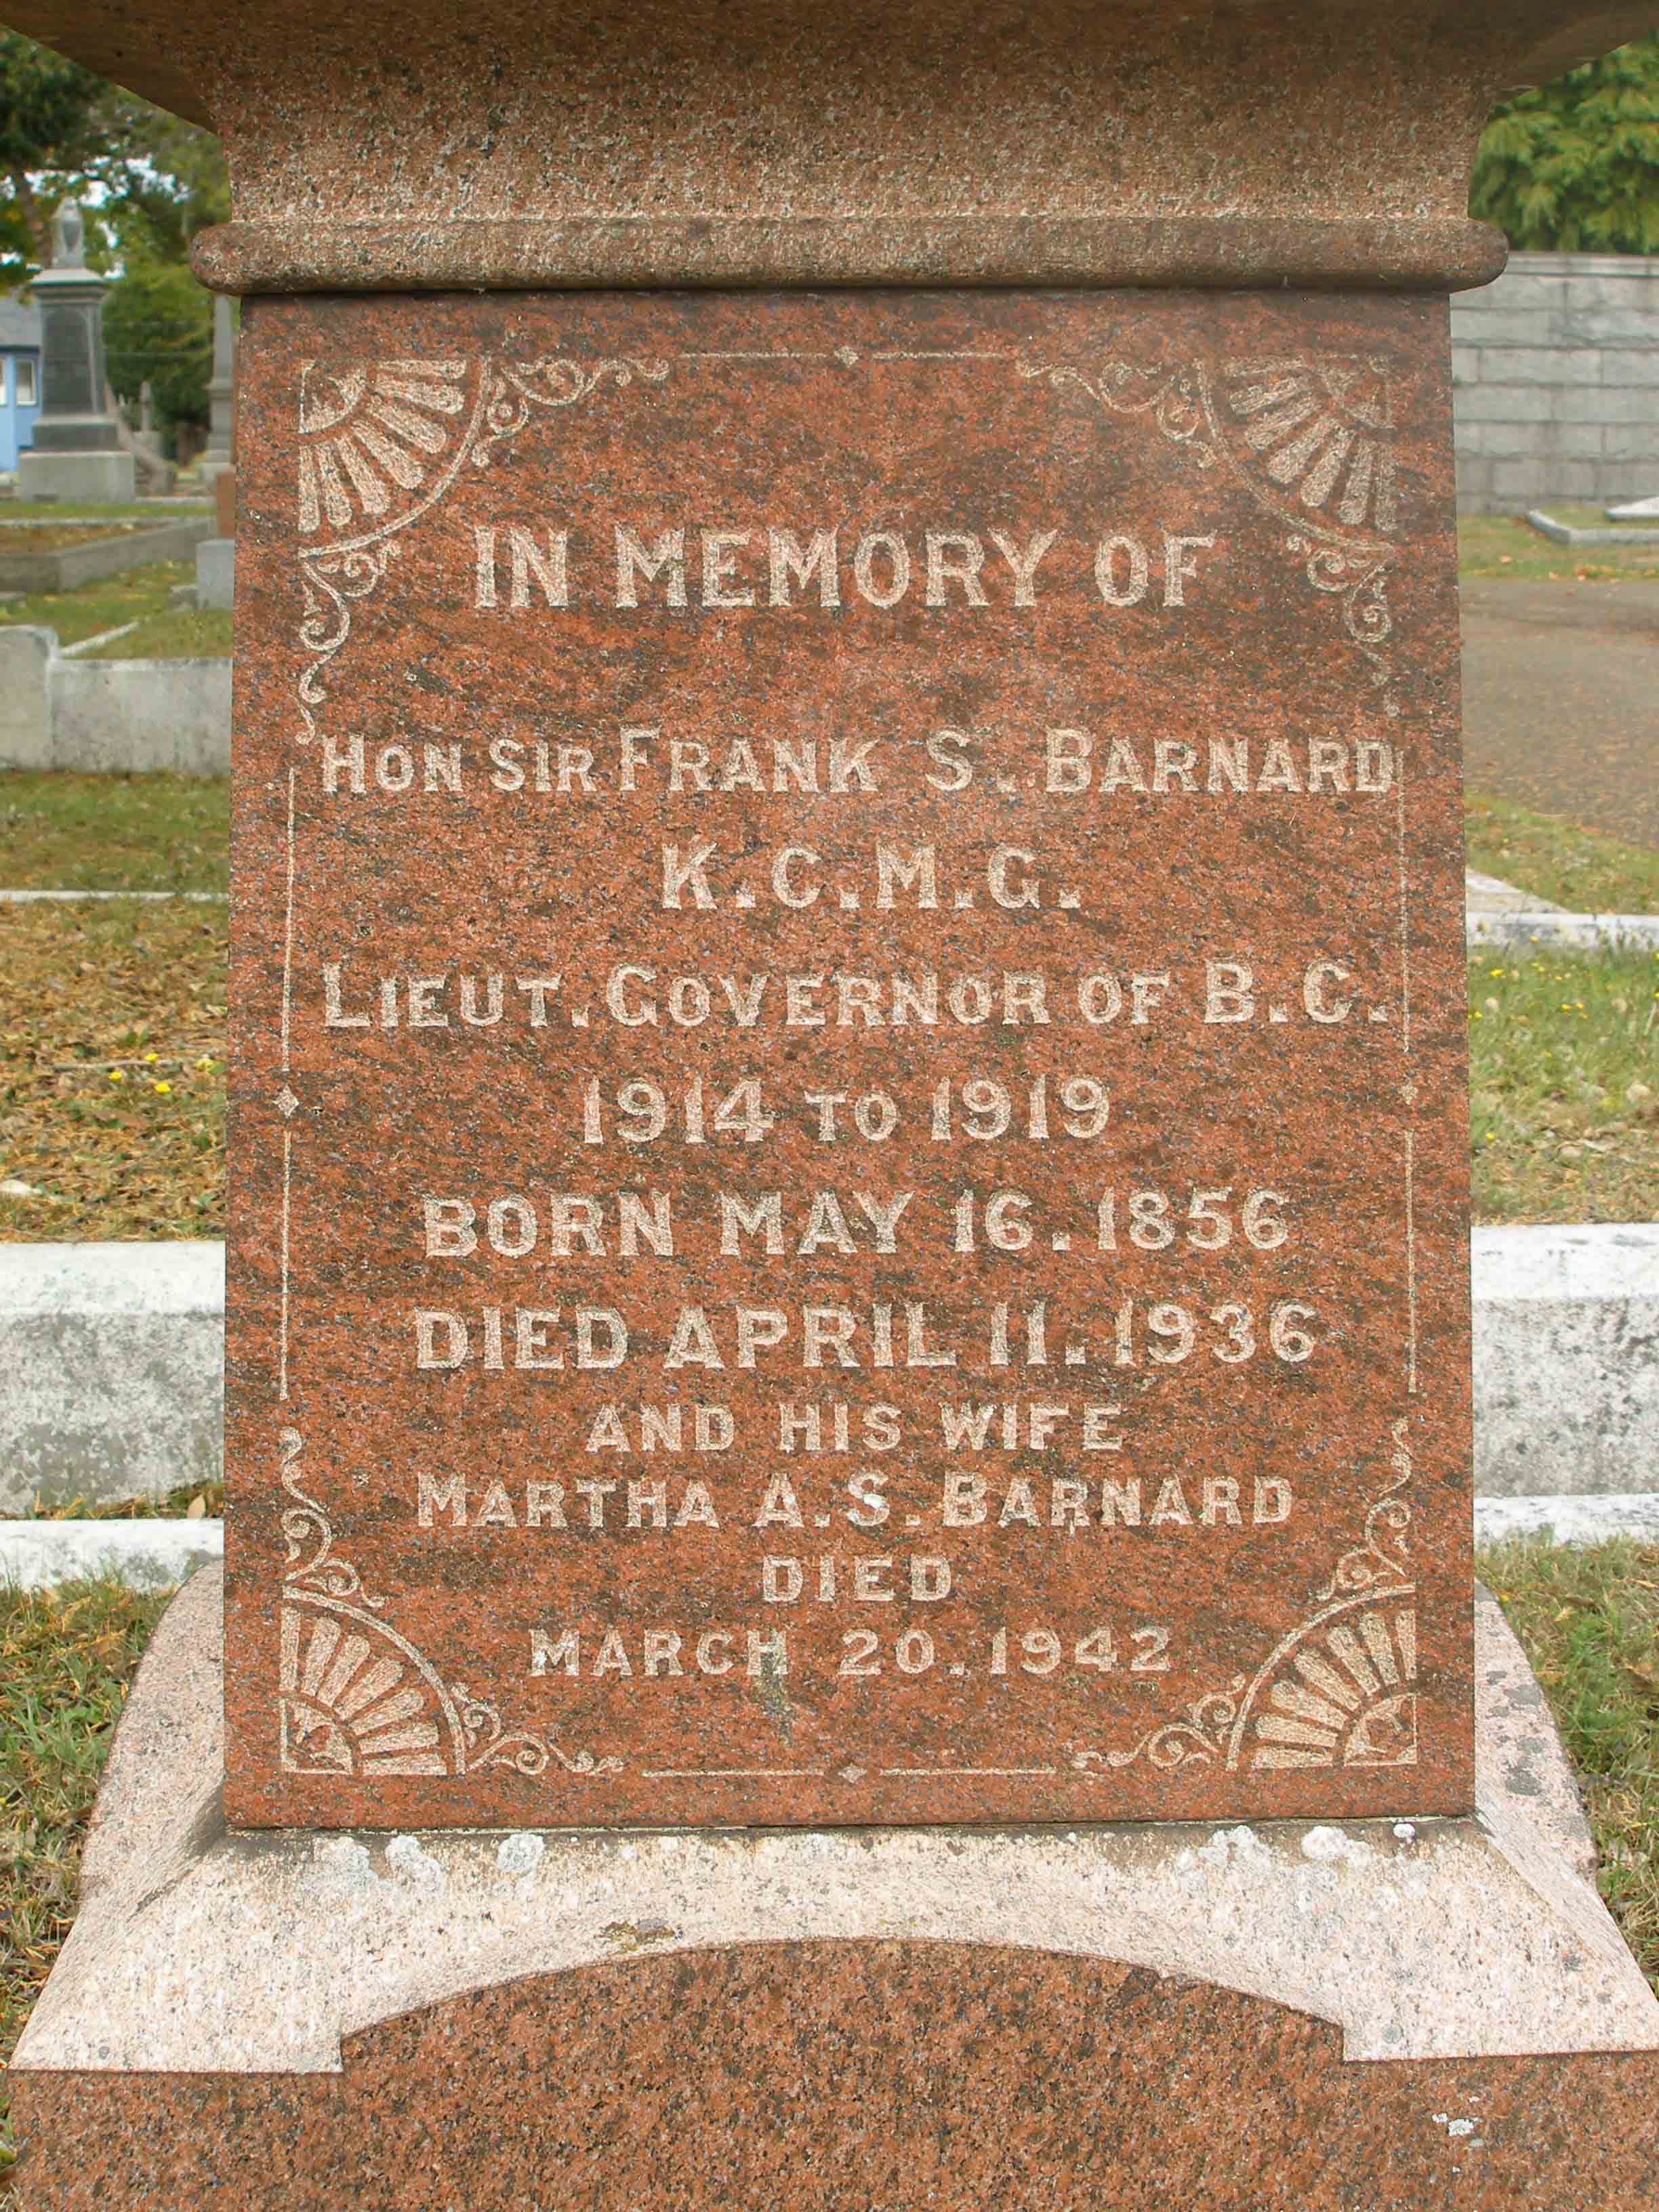 Sir Frank Barnard tomb inscription, Ross Bay cemetery